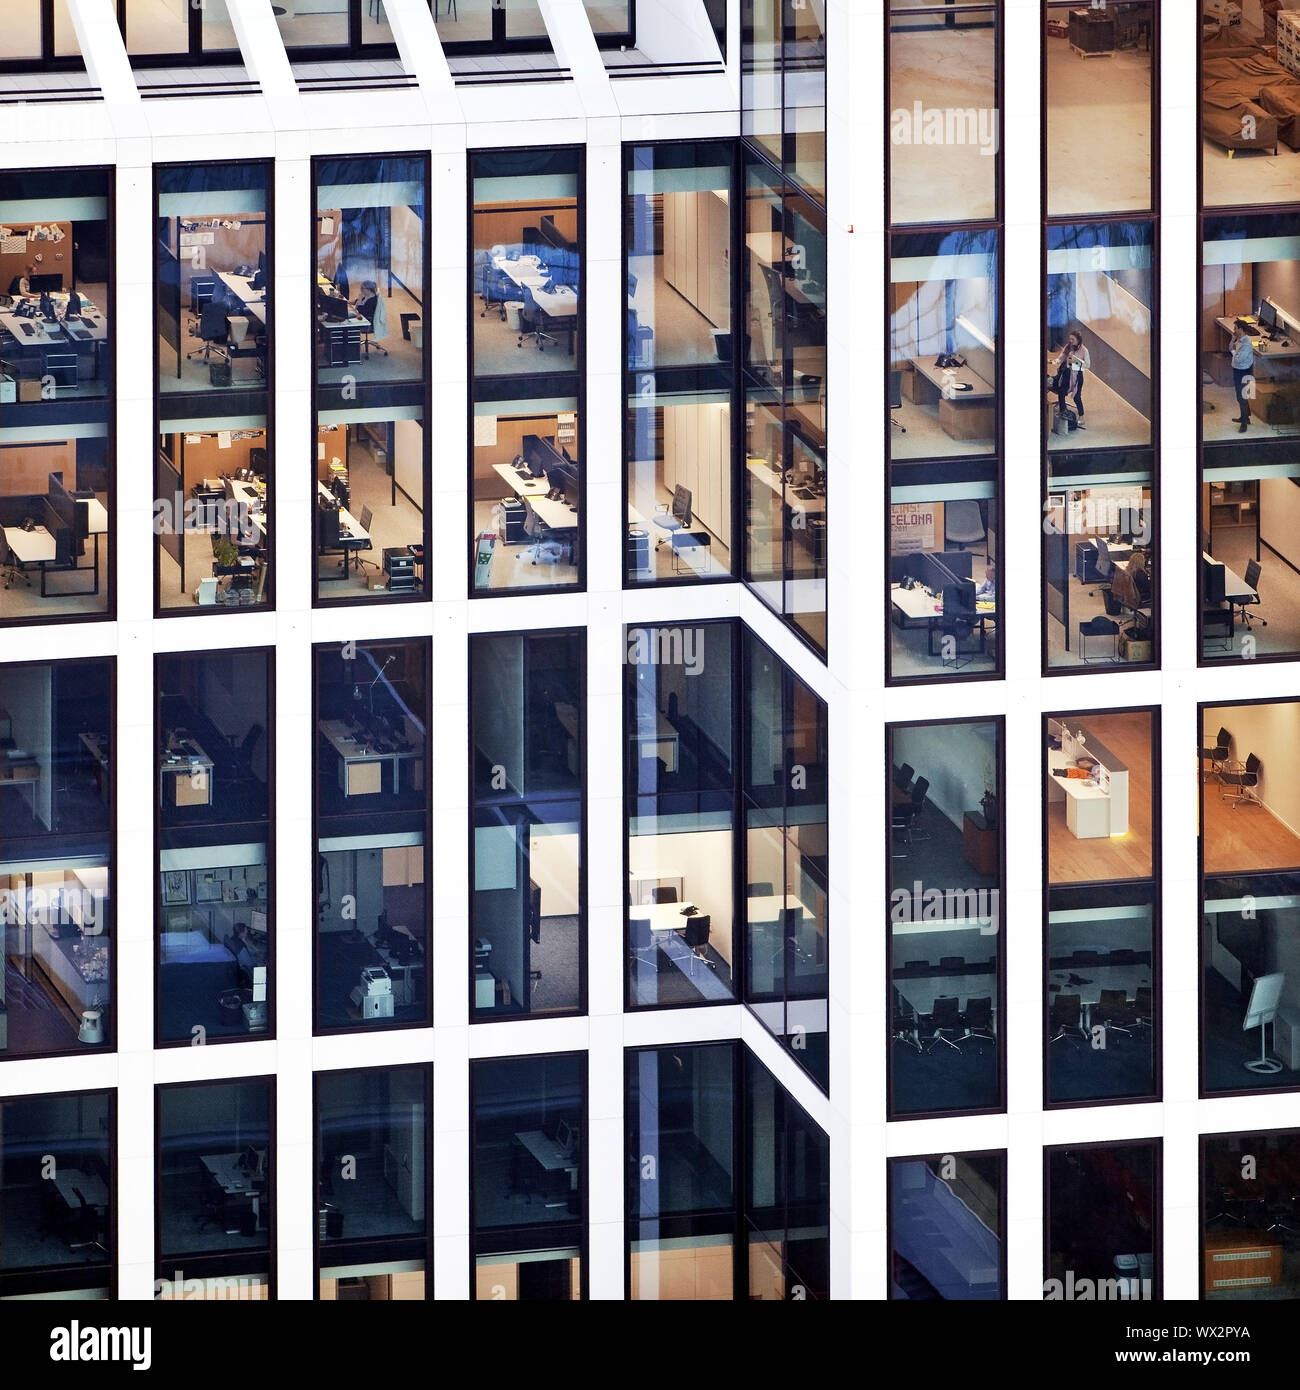 Immeuble de bureaux de grande hauteur avec des fenêtres en verre, des bureaux avec des gens au travail, Taunusturm, Francfort Banque D'Images